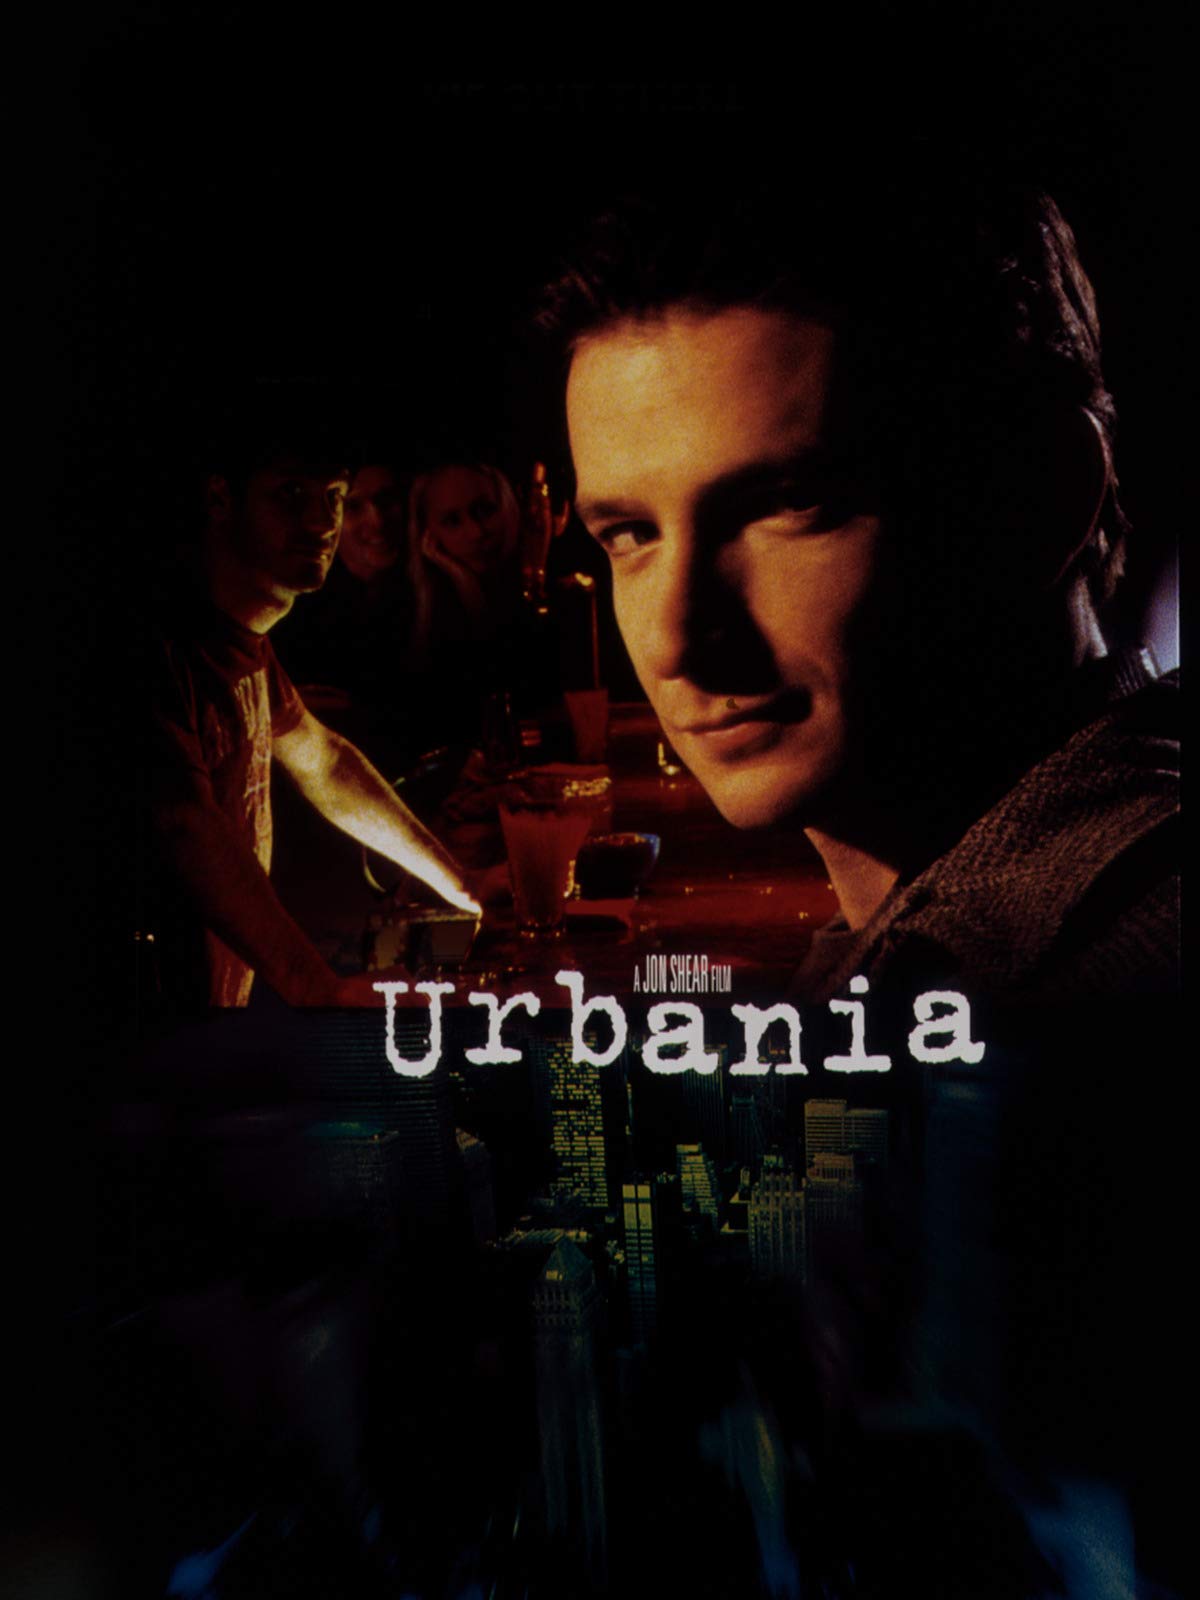 Urbania (2000) Screenshot 3